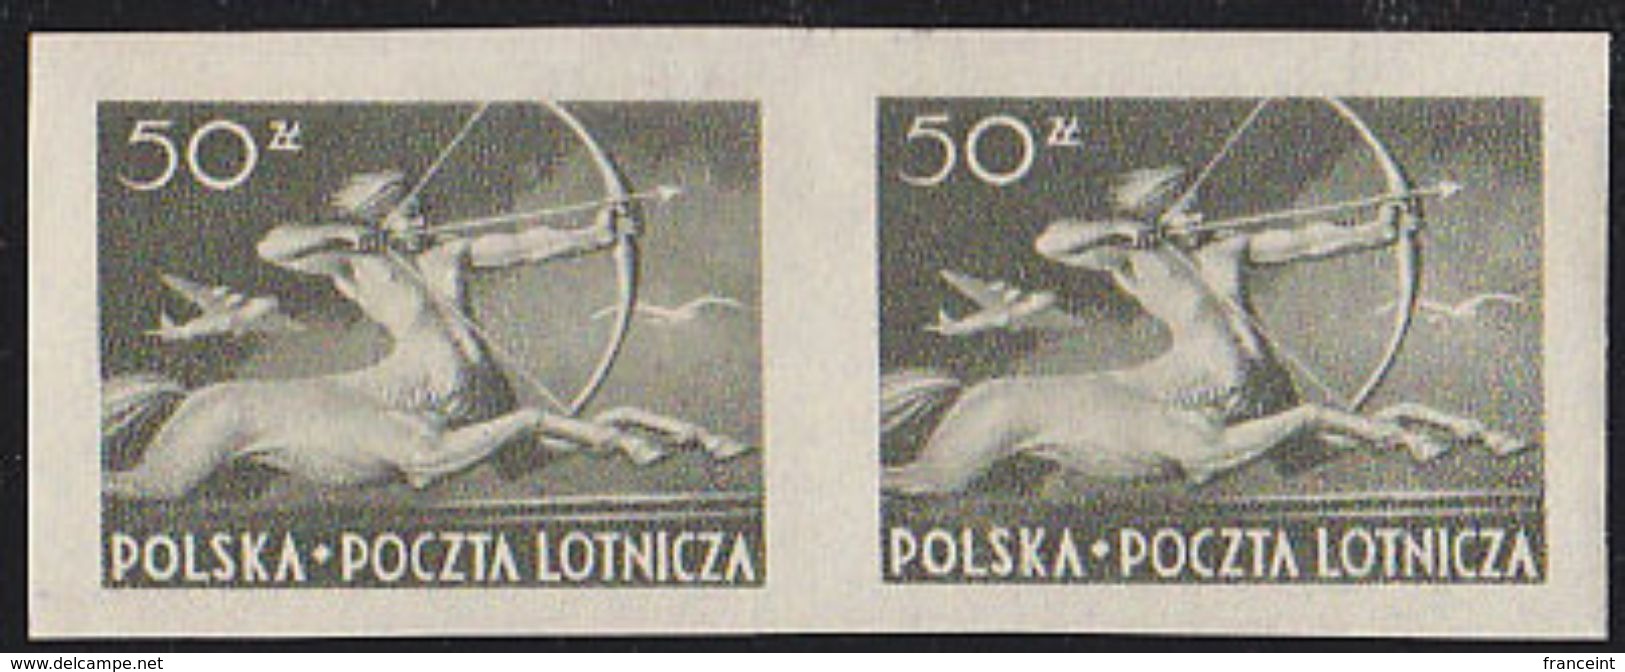 Poland 1948 50zt Centaur Airmail Imperforate Pair. Scott C24. MNH. - Unused Stamps